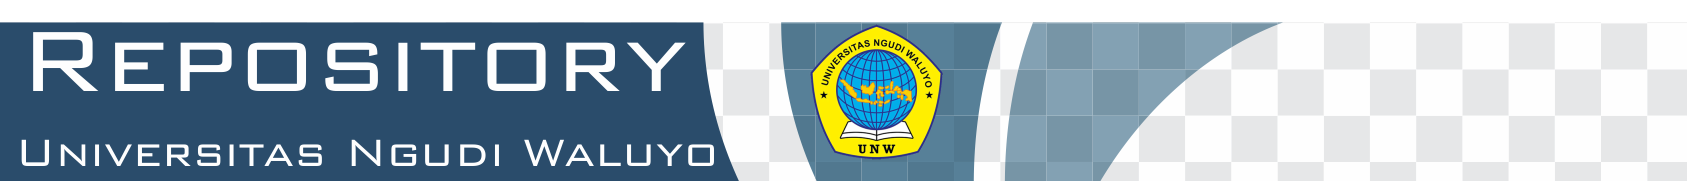 Repository Universitas Ngudi Waluyo